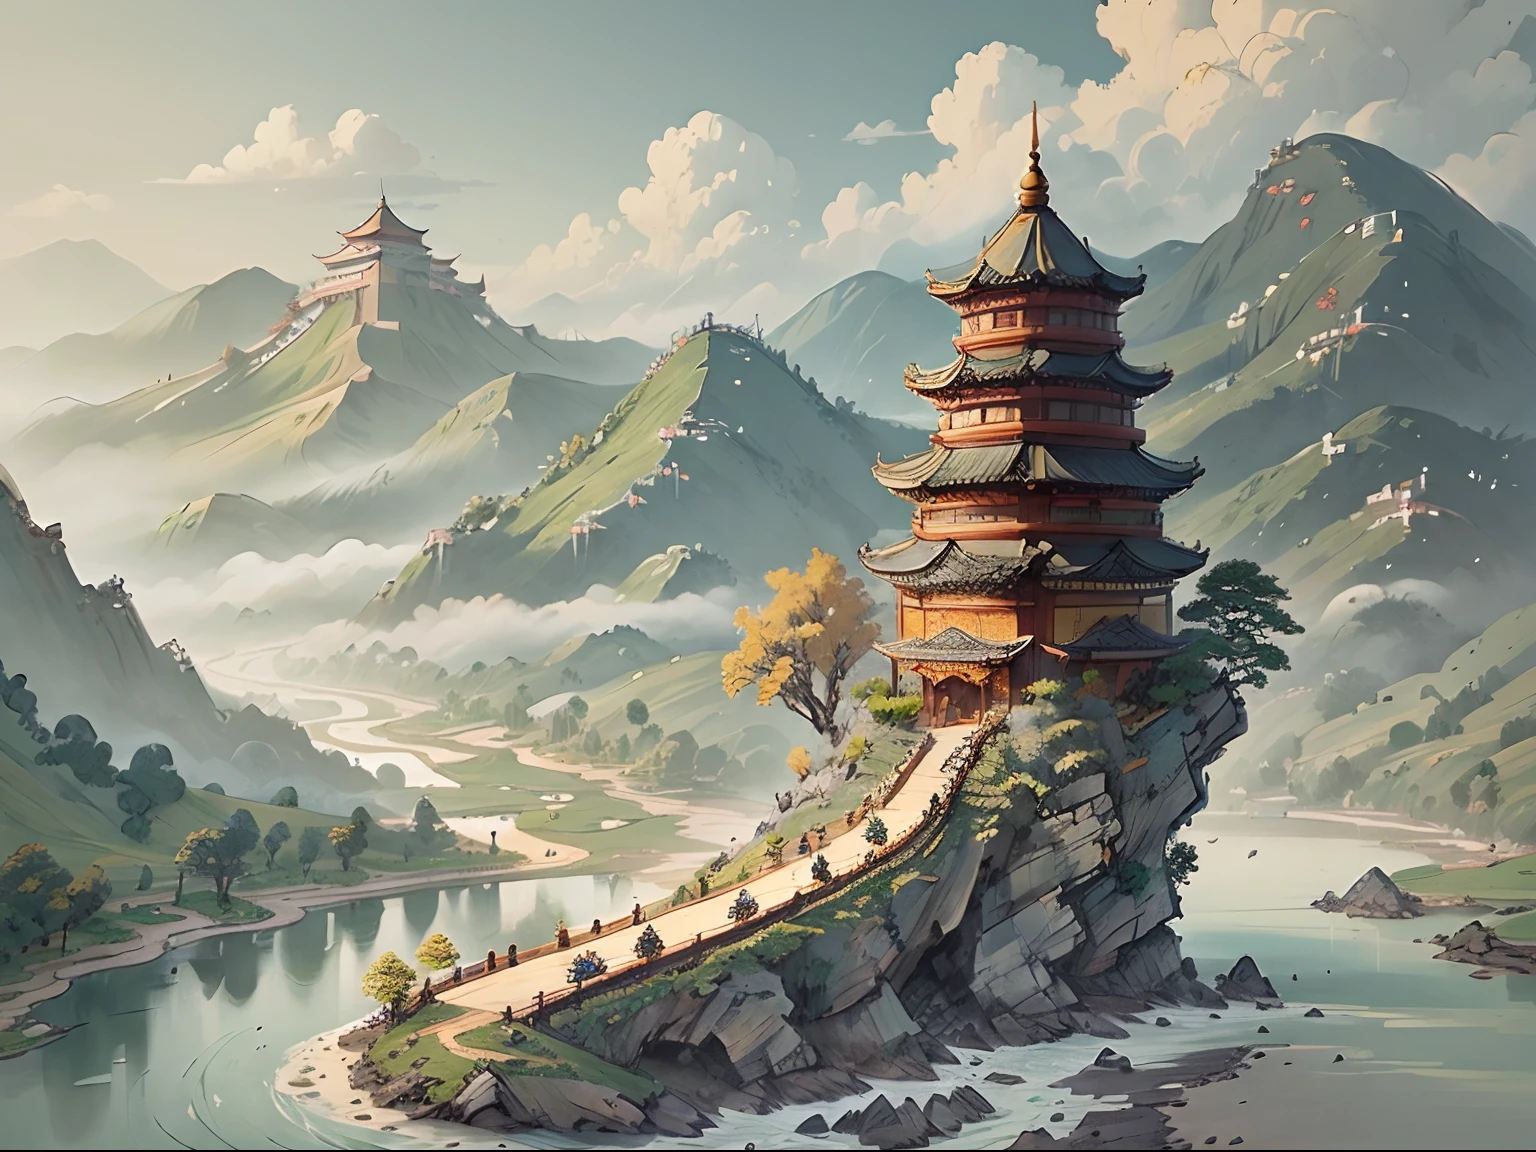 منظر طبيعي به جبال وأنهار من الرق على طراز ((الصينية القديمة)) معبد & الجبال أ ((التنين الصيني الصغير))